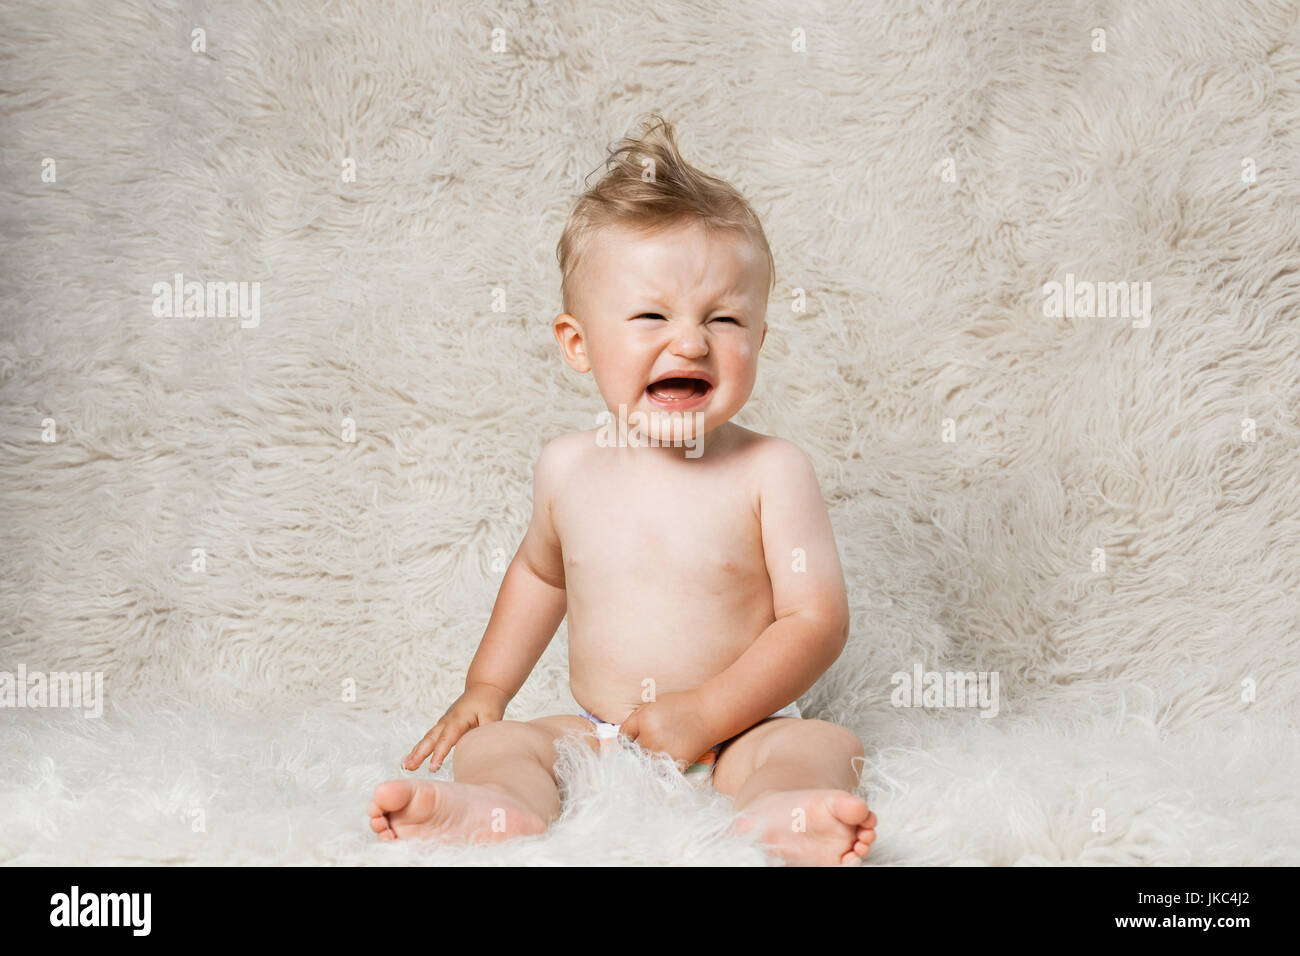 El llanto del bebé niño en pañales, sentada sobre una manta de lana shaggy caseros Foto de stock